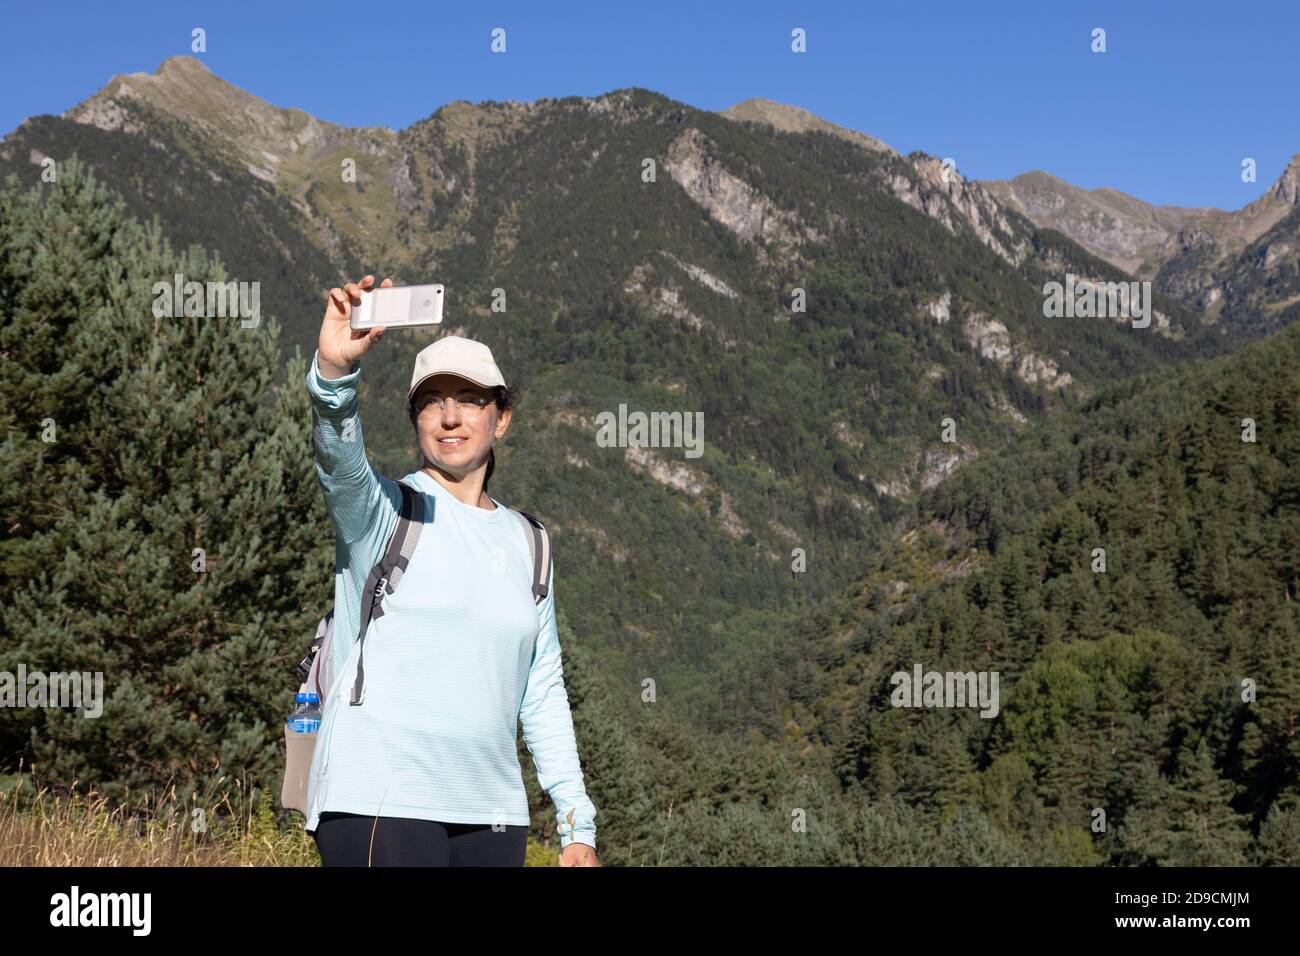 Junge Tourist Frau nehmen ein Bild vom Berg mit Handy Telefon Stockfoto